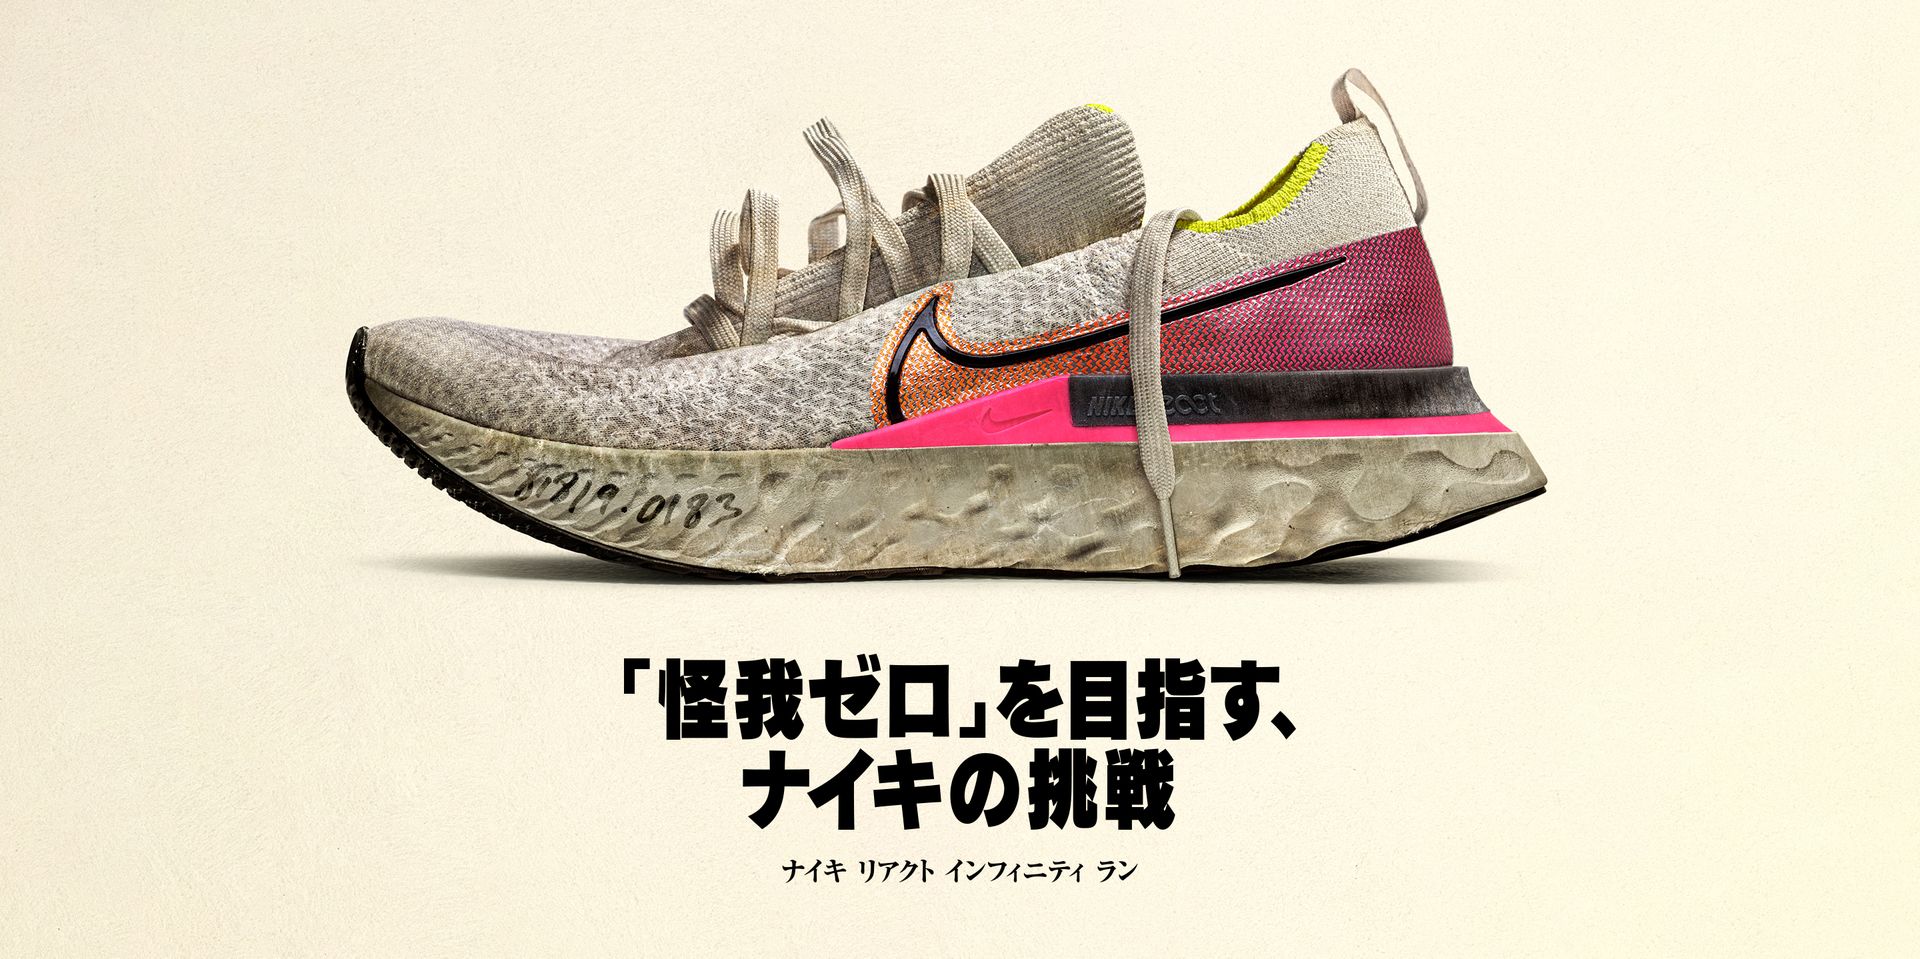 ナイキ リアクト インフィニティ ラン. Nike 日本